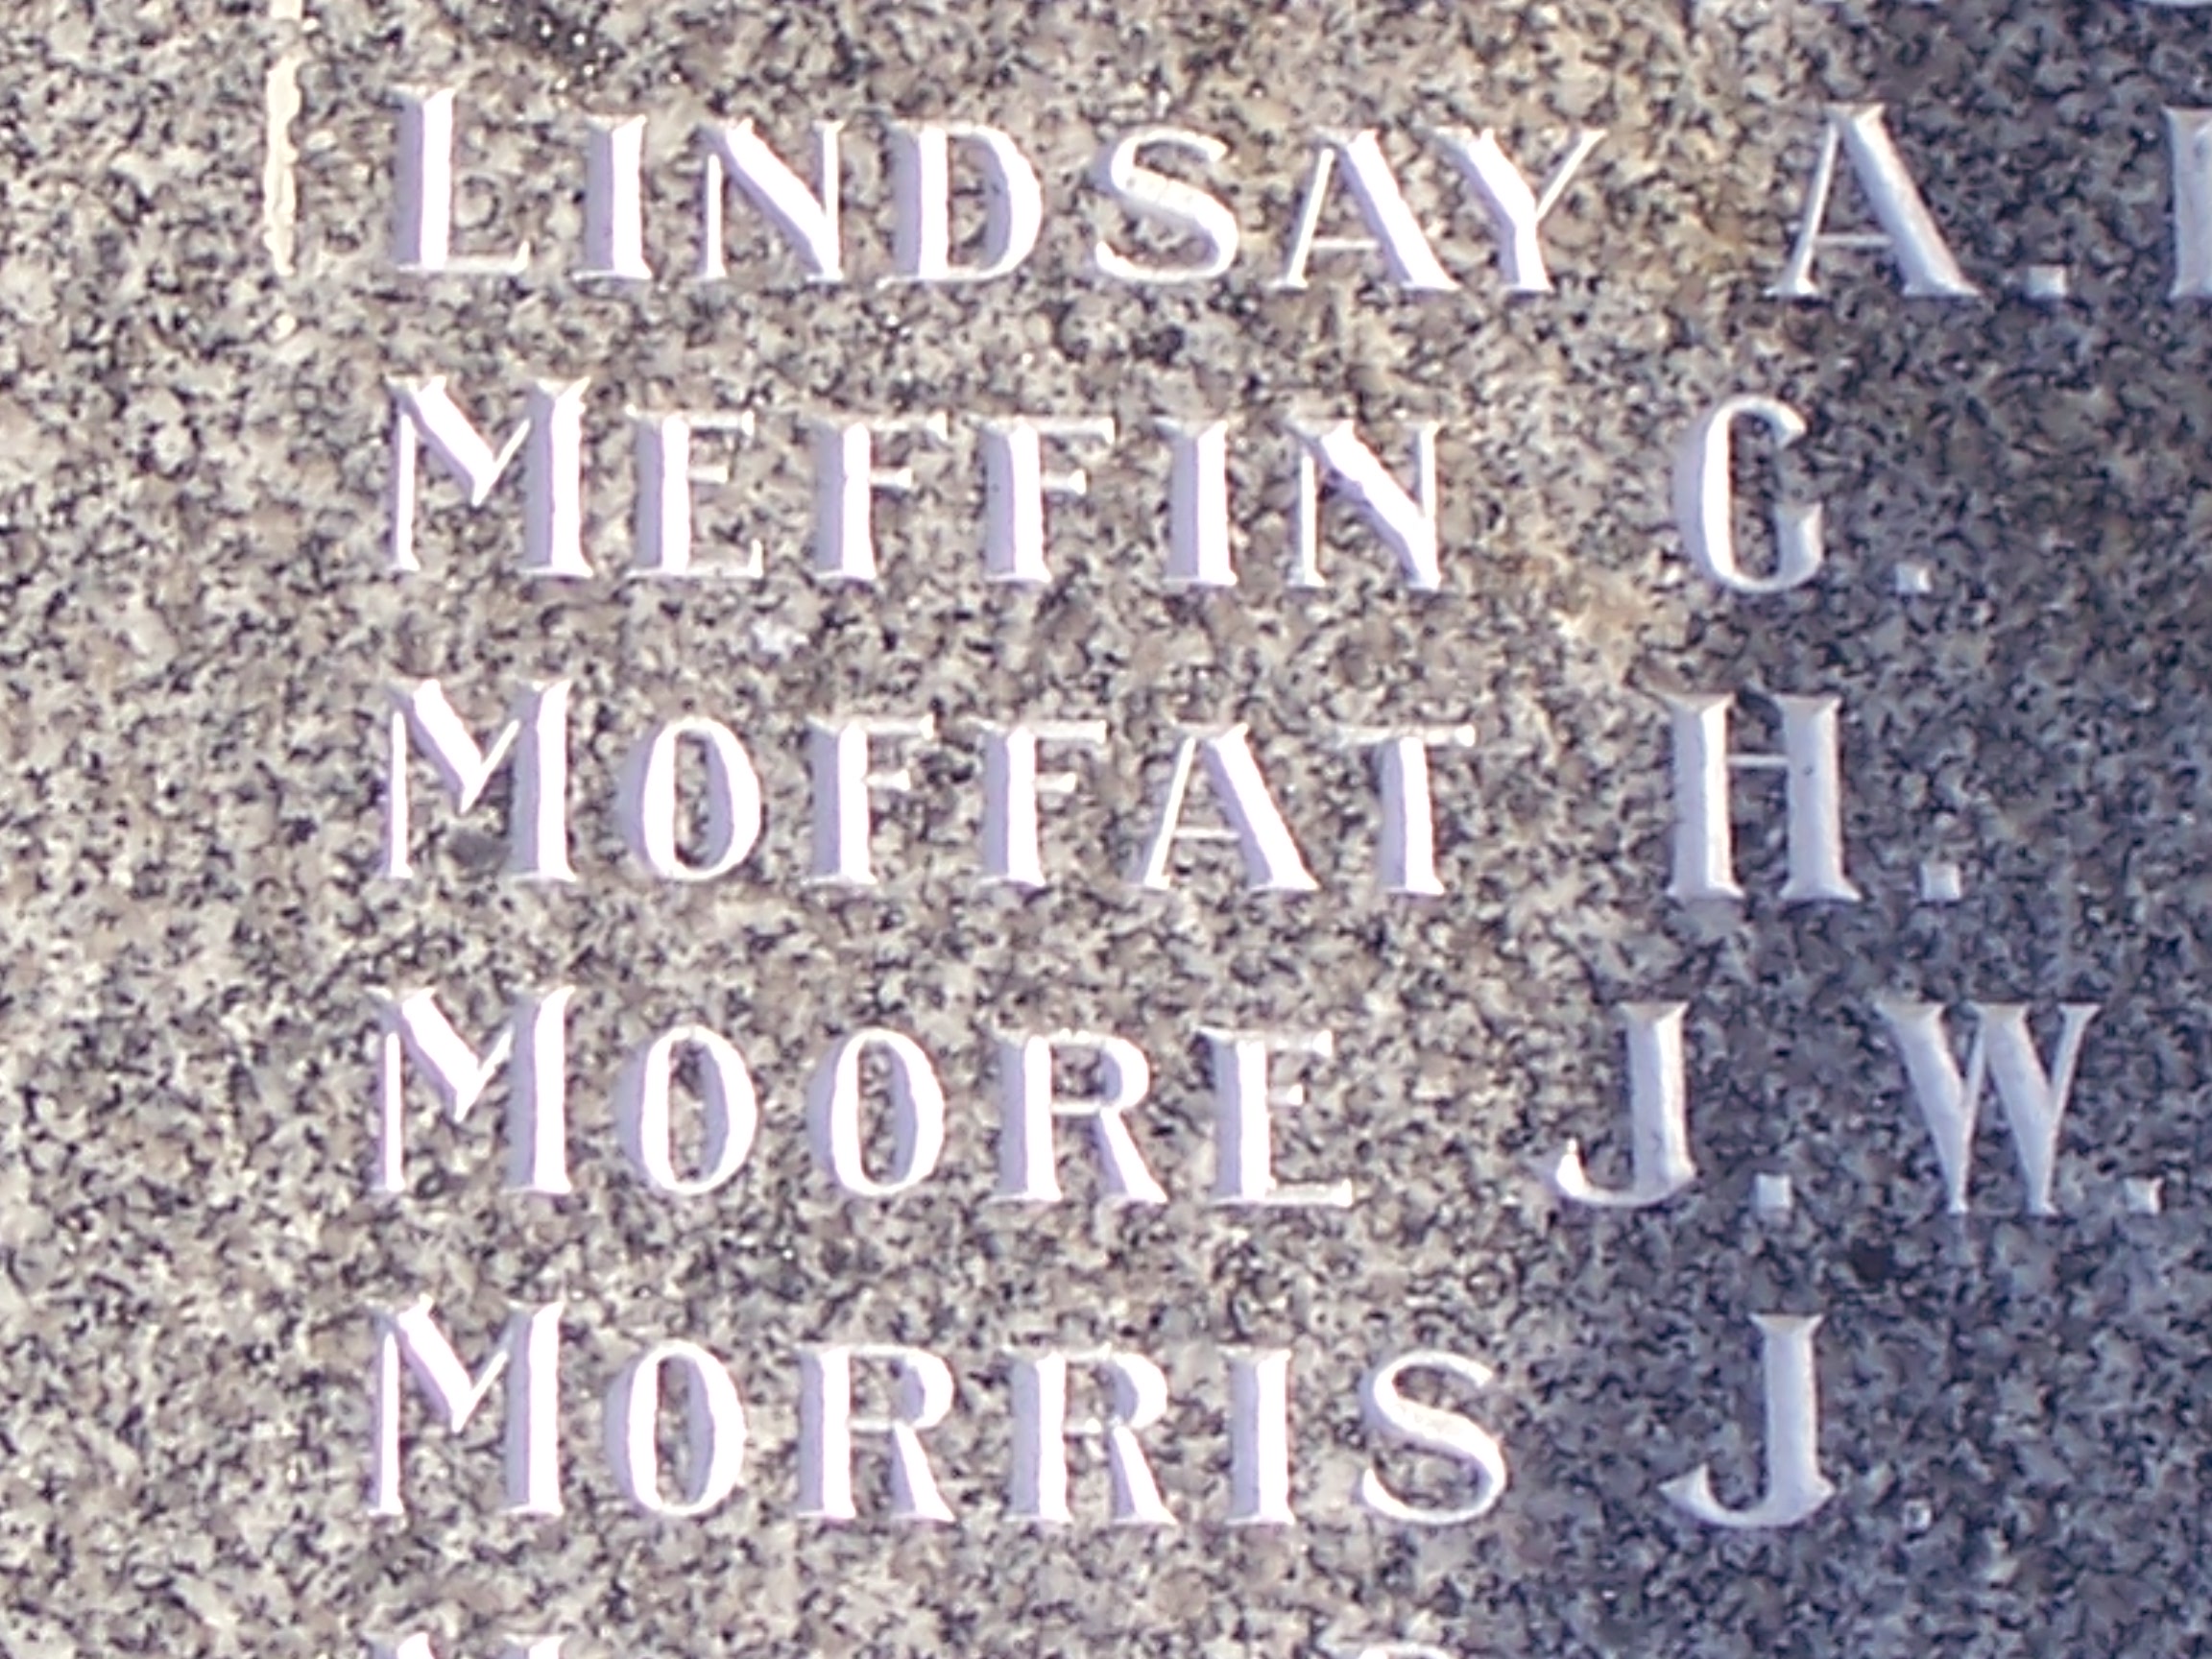 Otautau War Memorial showing Harry's name